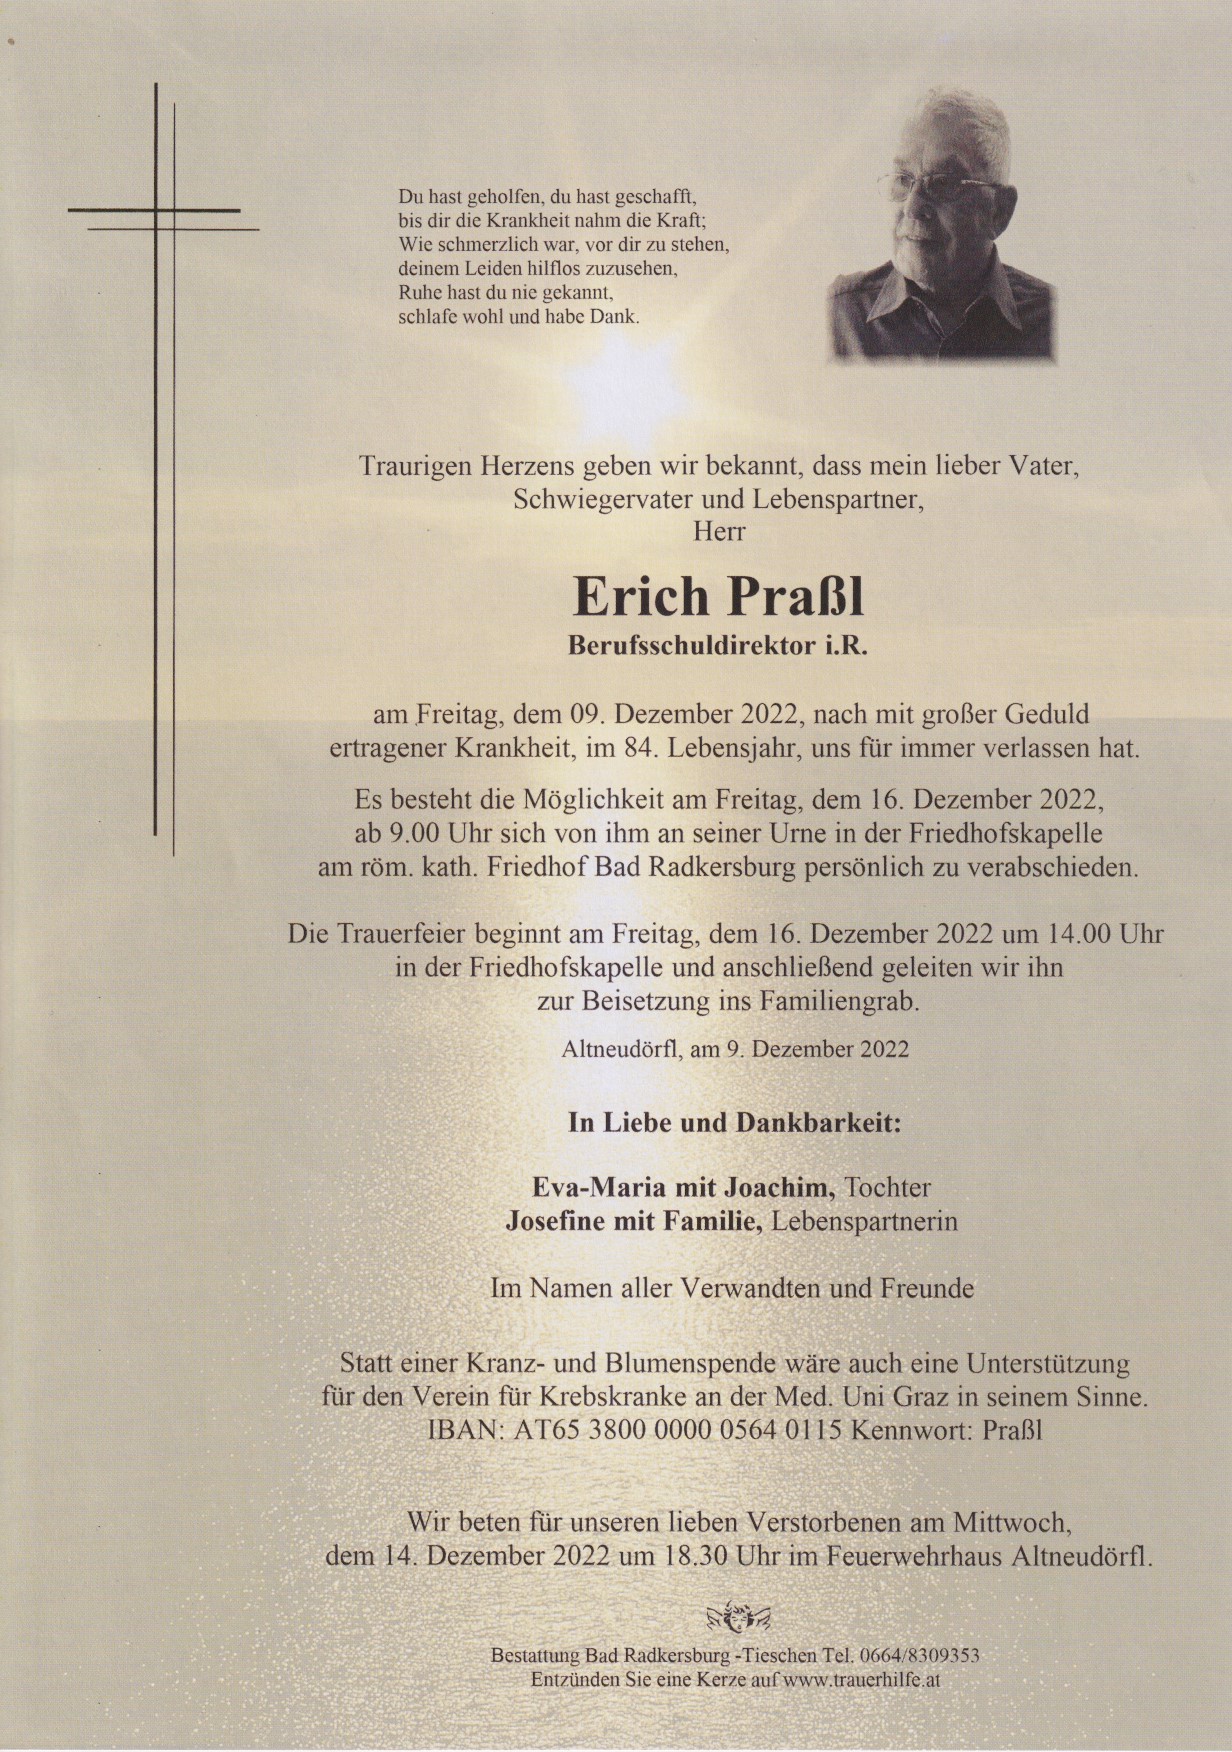 Erich Praßl